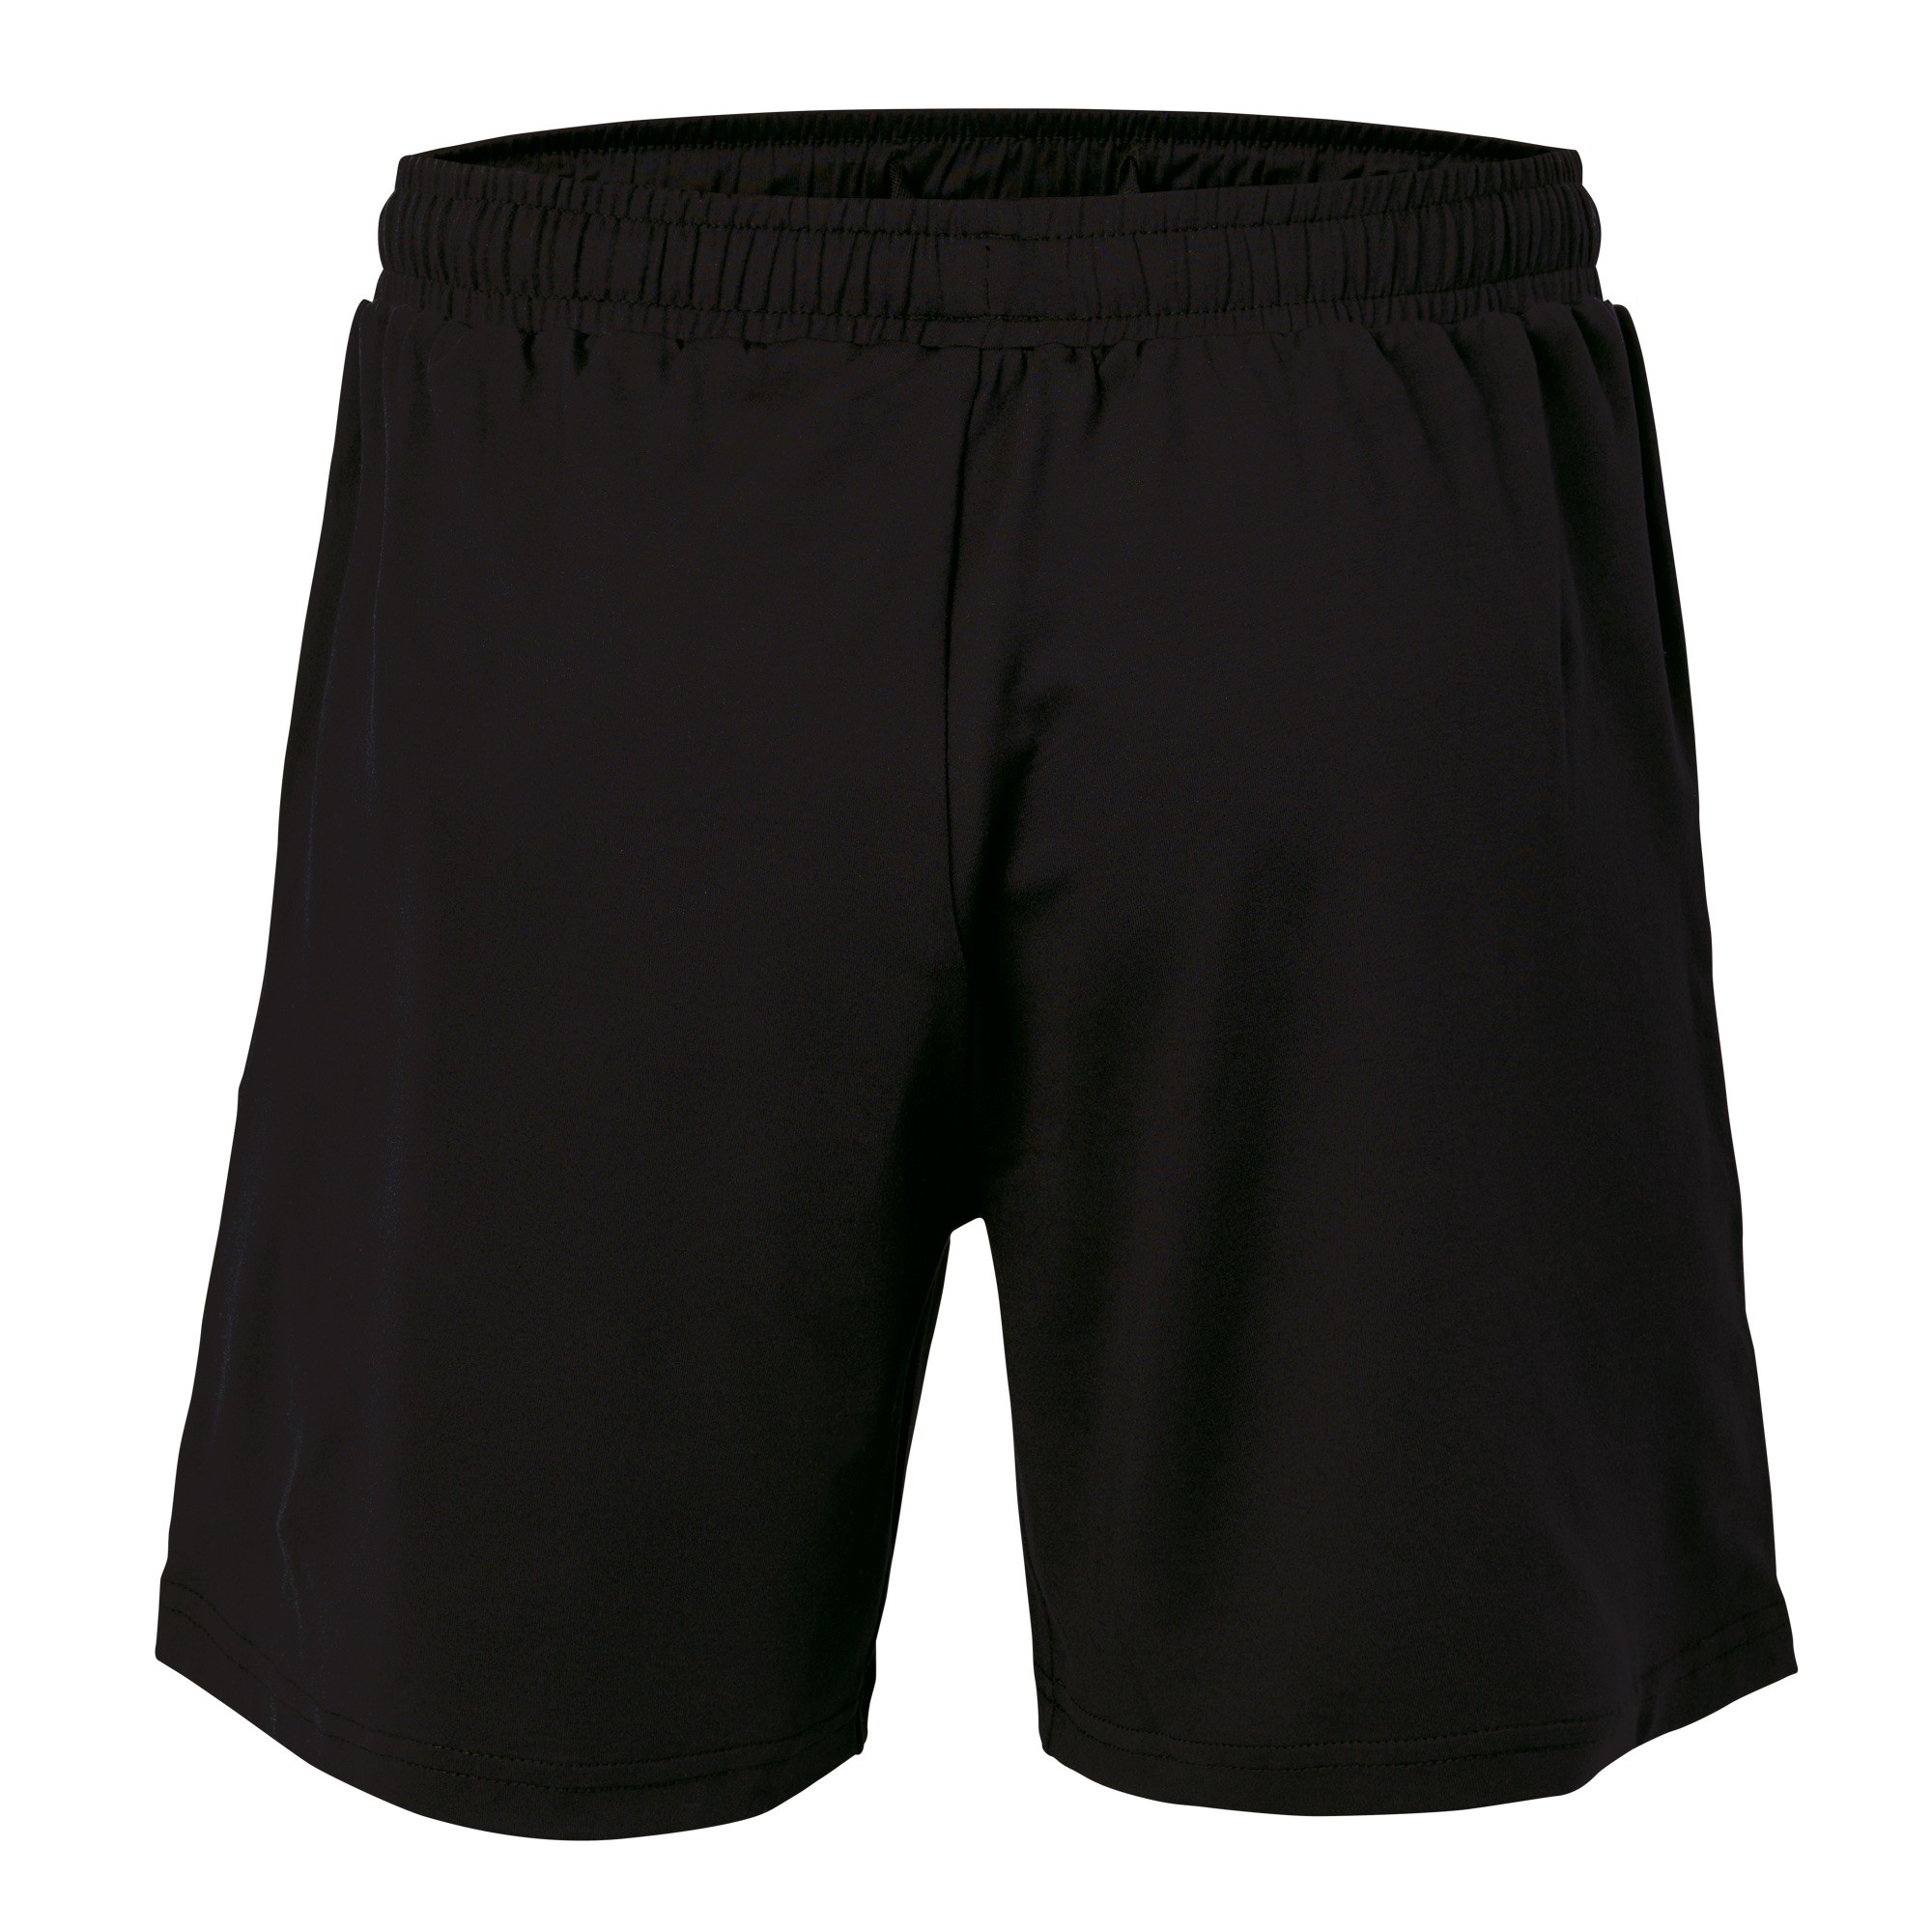 Andro Shorts Tarox black/grey | Tabletennis11.com (TT11)